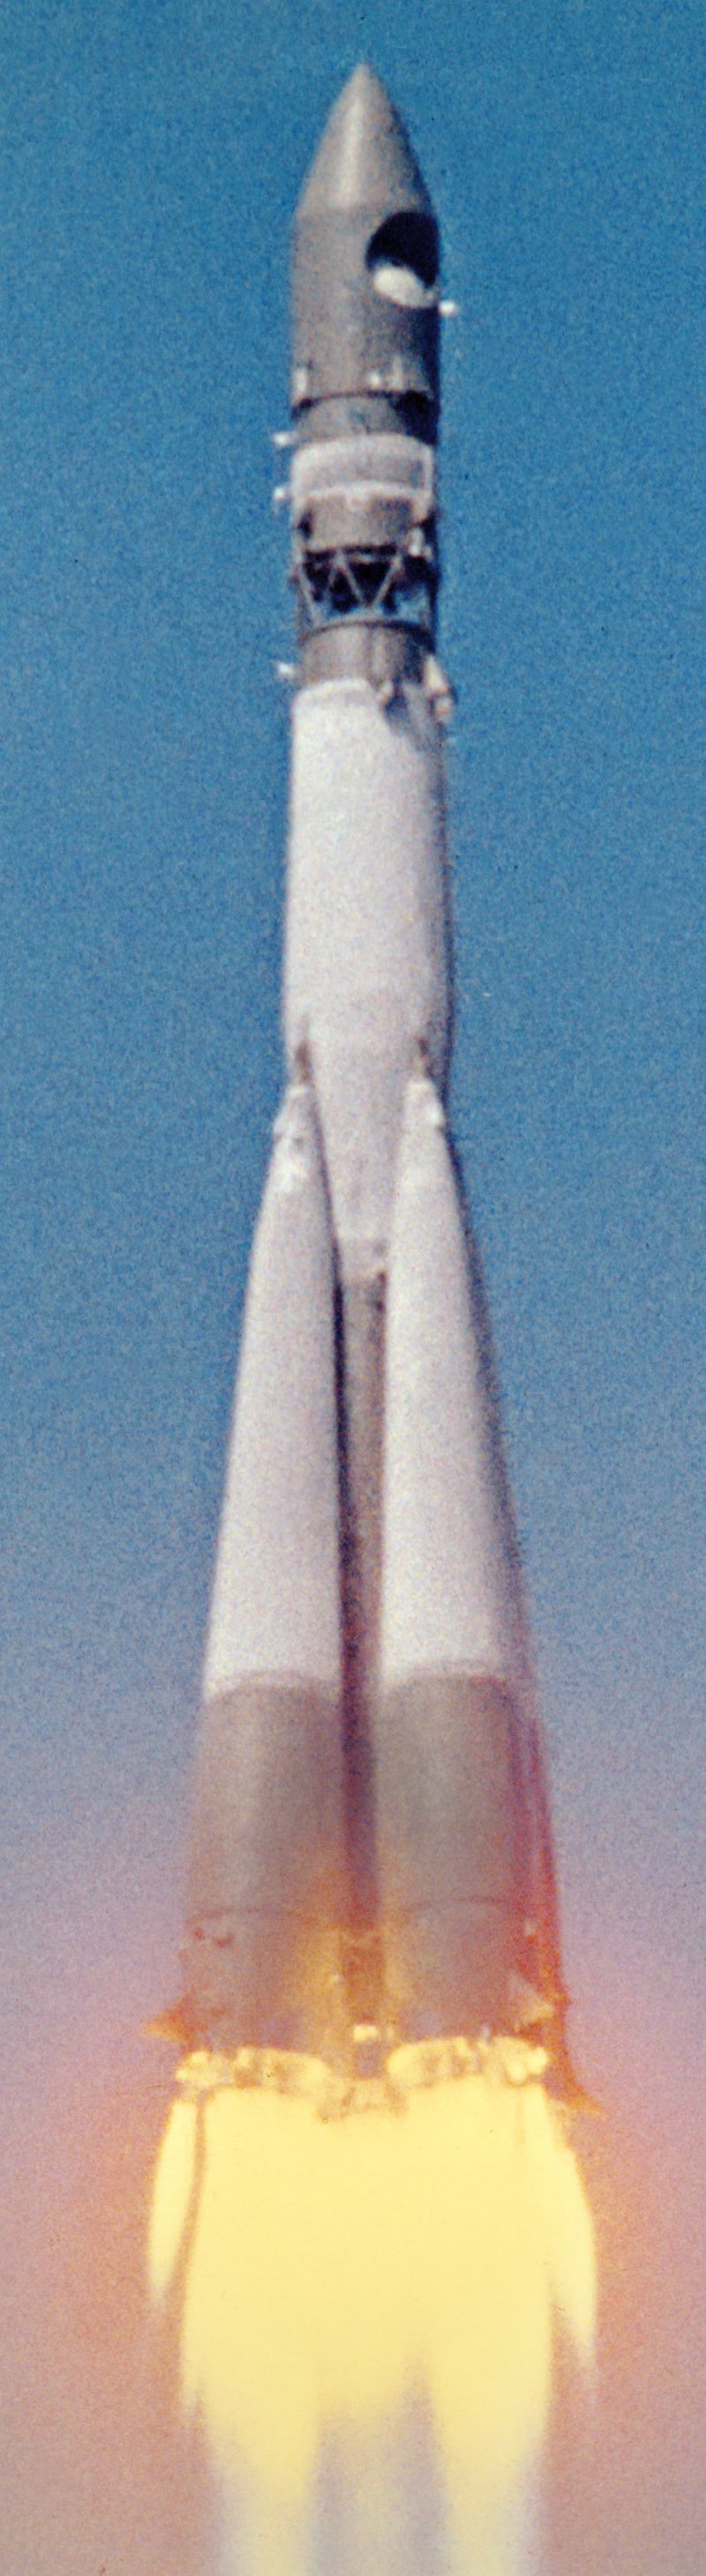 Ракета Юрия Гагарина Восток-1